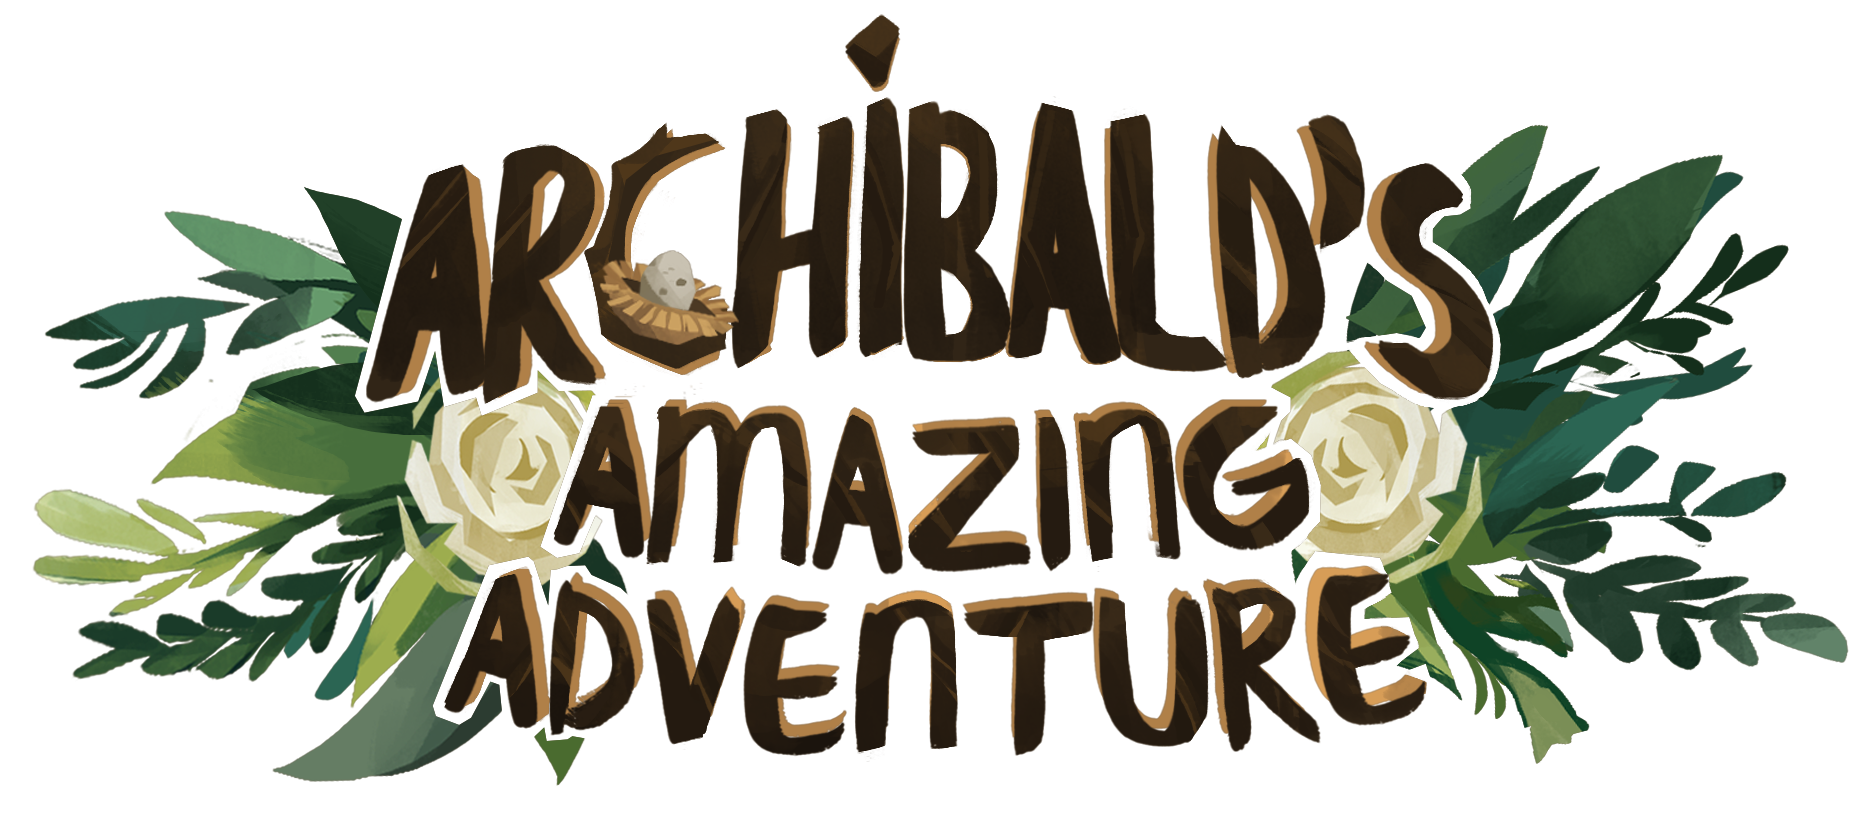 Archibald's Amazing Adventure